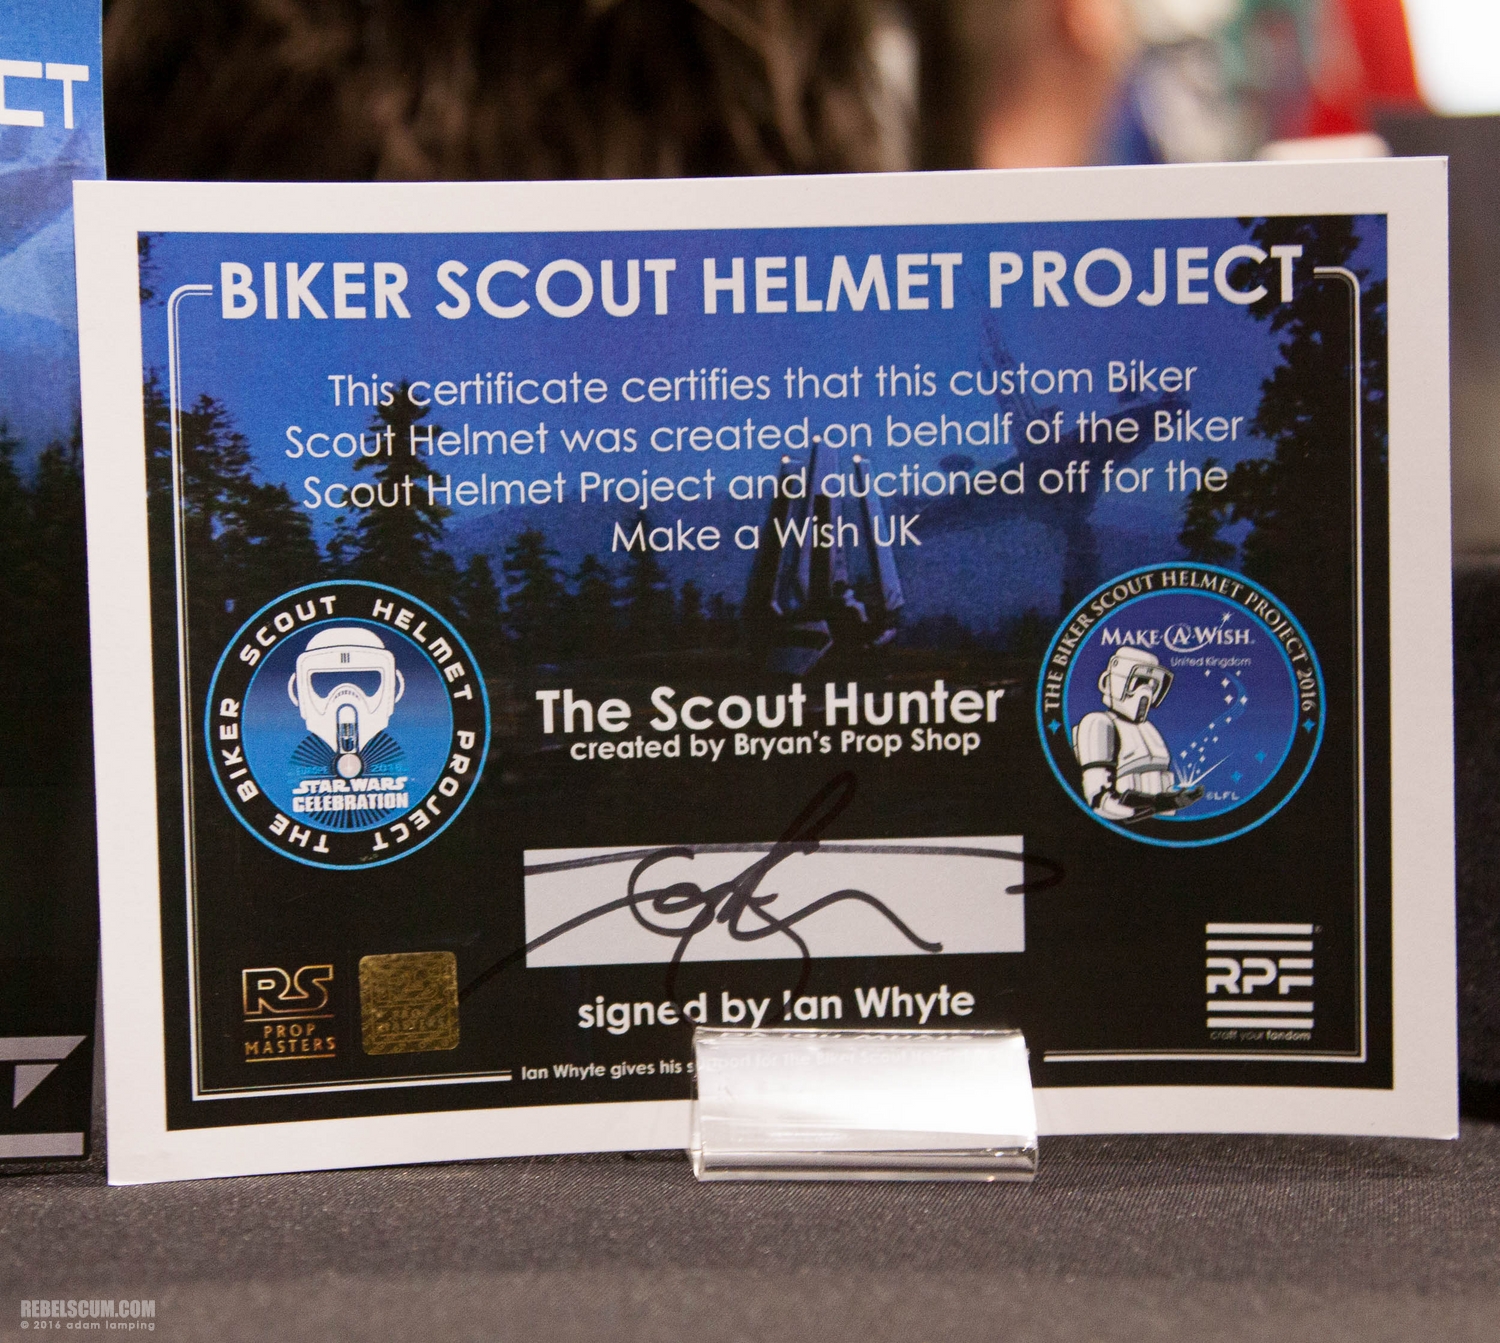 star-wars-celebration-2016-biker-scout-helmet-project-100.jpg